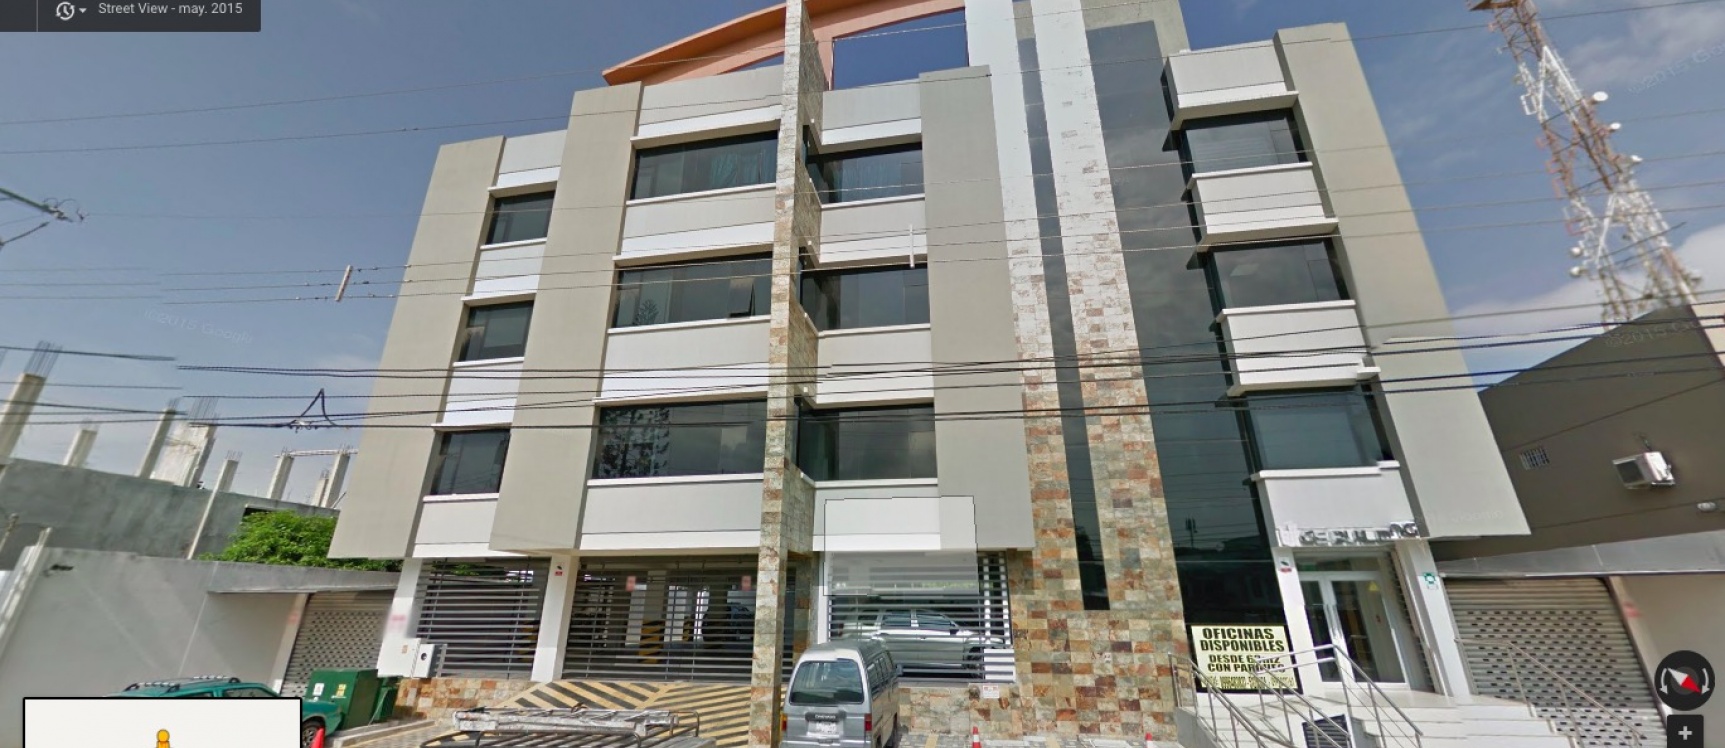 GeoBienes - Alquilo oficina en la Garzota Guayaquil Edificio GS Building - Plusvalia Guayaquil Casas de venta y alquiler Inmobiliaria Ecuador